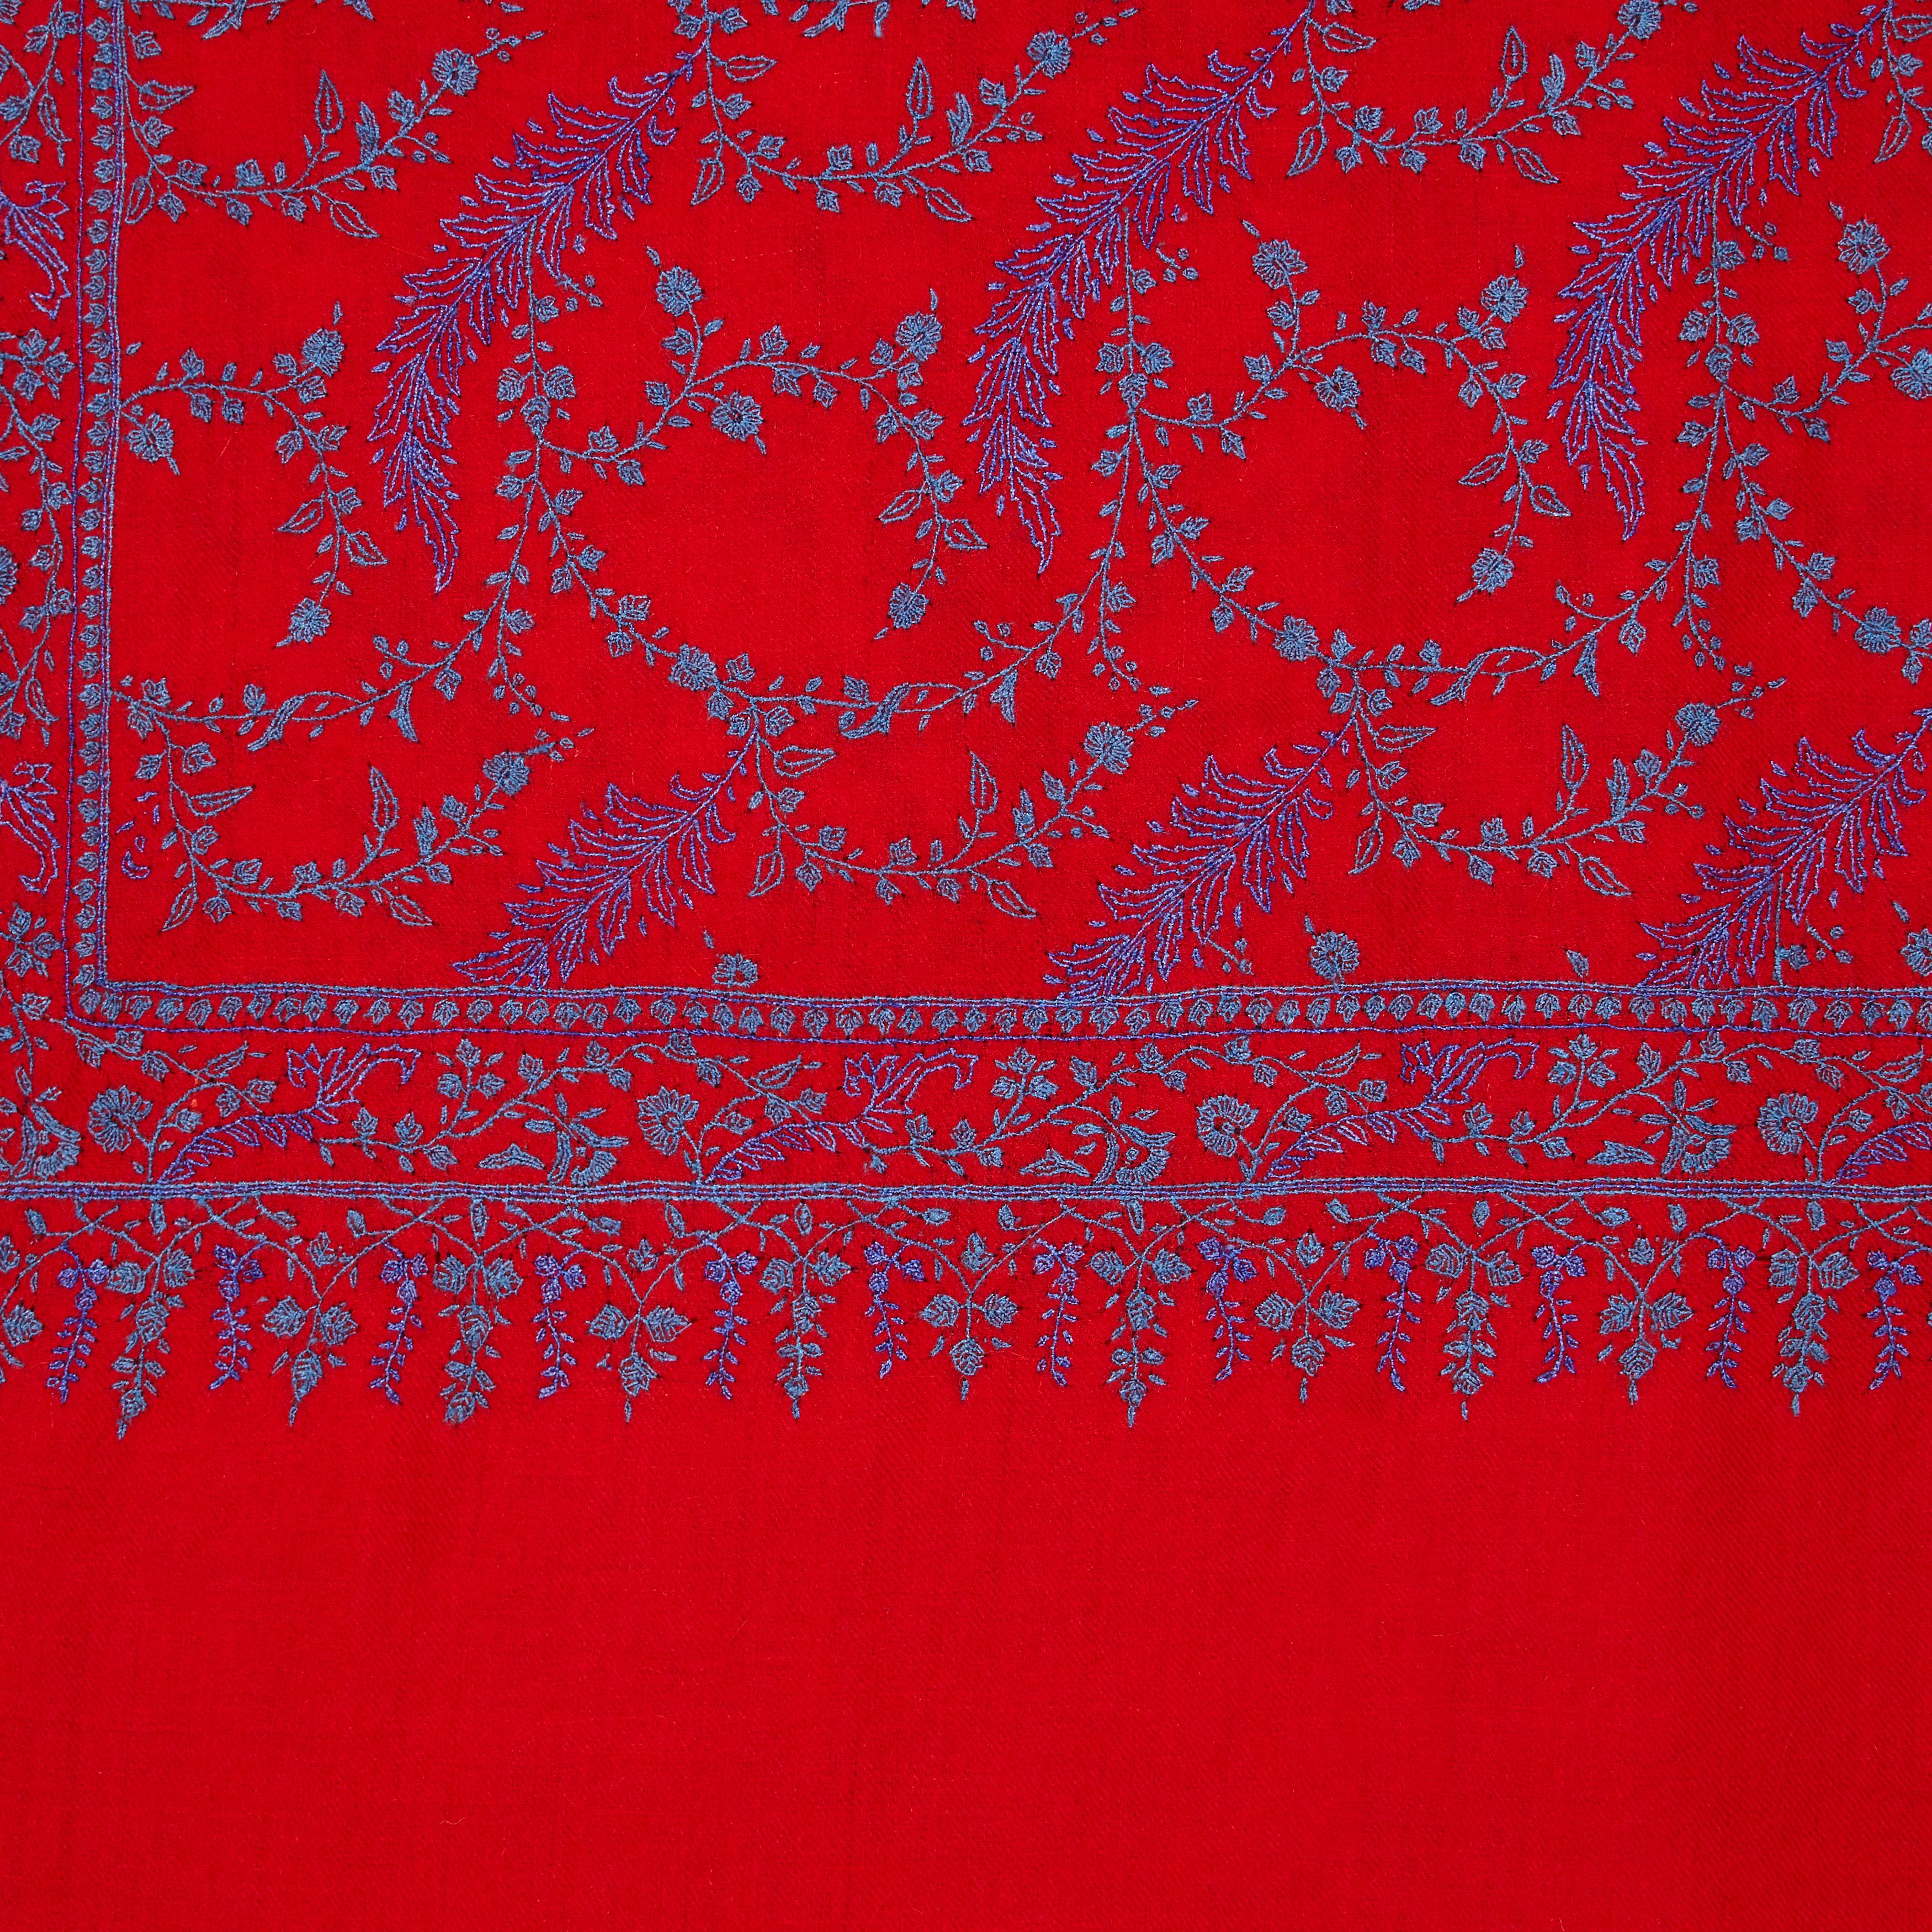 Hochwertiger handbestickter Schal aus 100% Kaschmir in Rot und Blau 

Das perfekte Weihnachtsgeschenk für einen besonderen Menschen - dieser Schal ist einzigartig und handgefertigt. 
Der Schal von Verheyen London ist aus feinstem, besticktem,